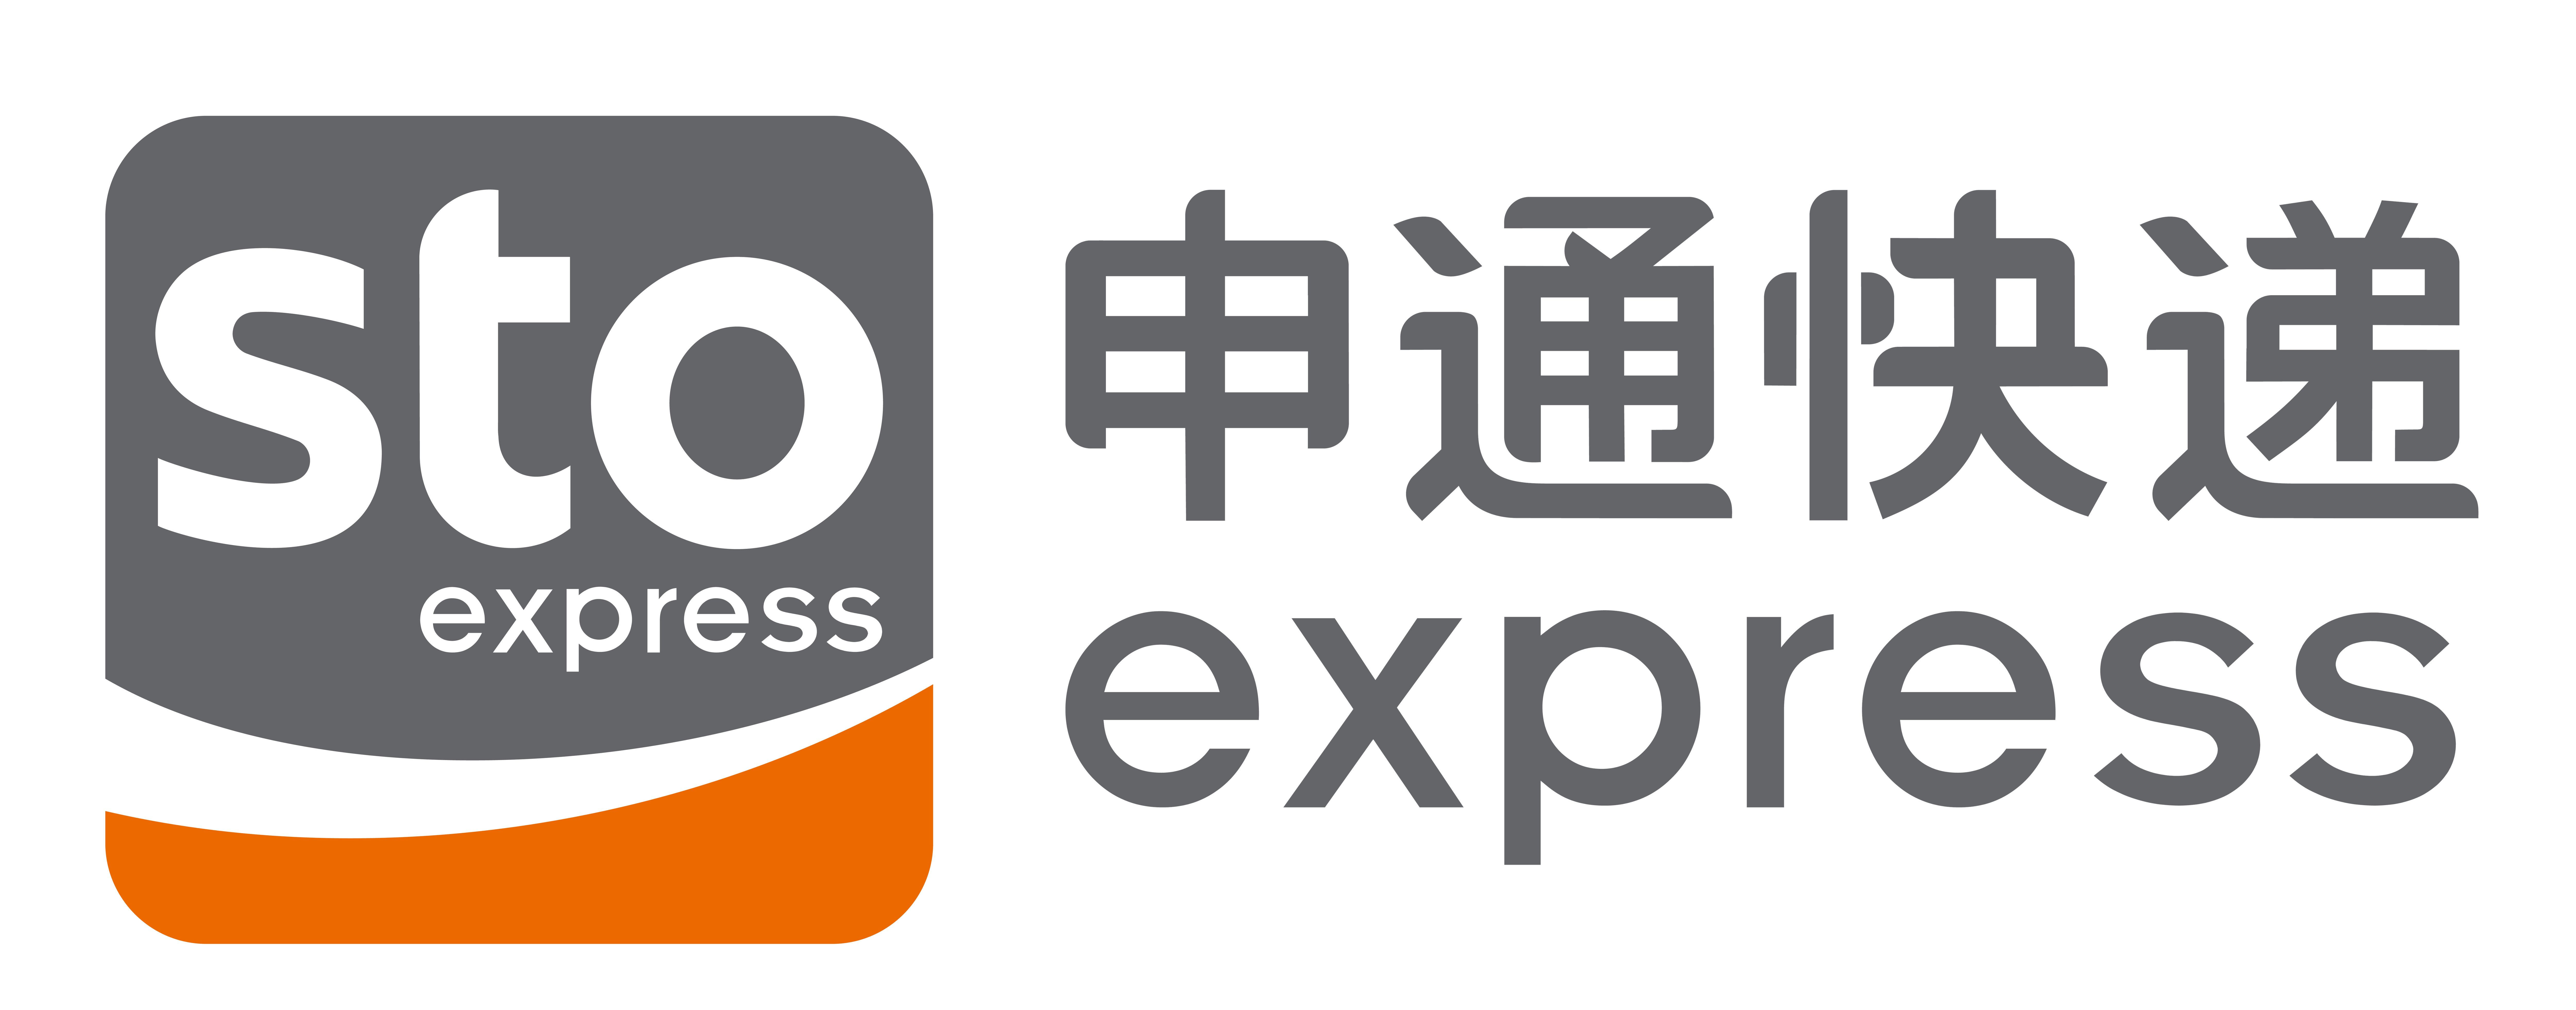 上海申通物流有限公司(公司)申通快递有限公司,2007年12月29日成立